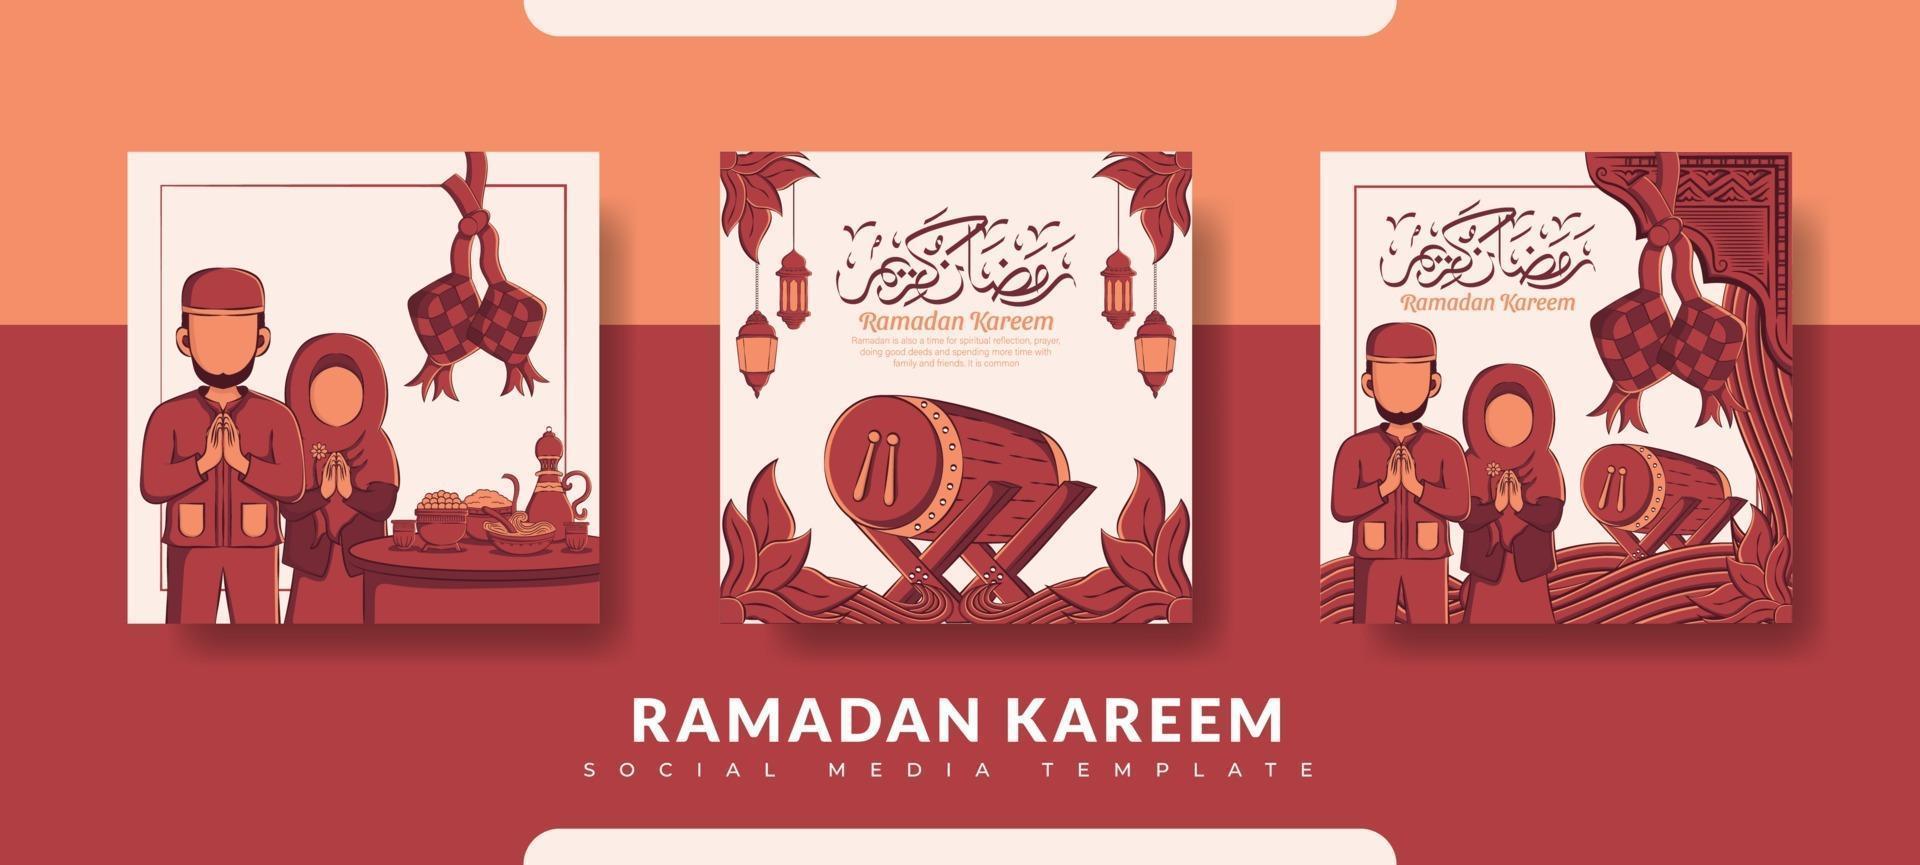 modelo de postagem do ramadã, conjunto de modelos de postagem de mídia social vetor